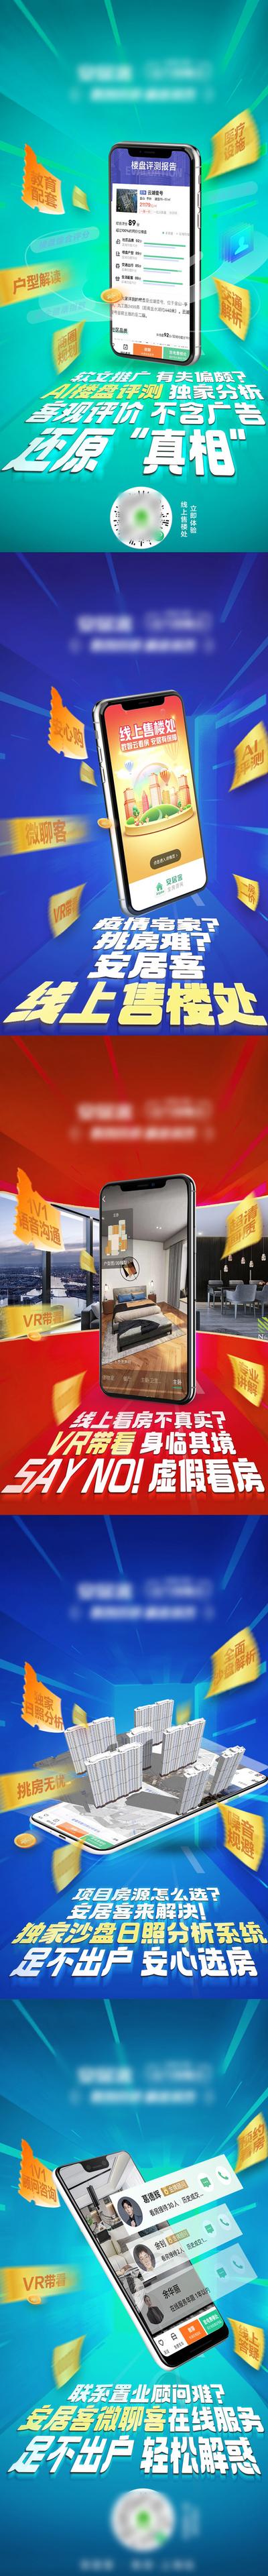 南门网 海报 房地产 手机 VR 线上 看房 价值点 产品 功能 介绍 系列